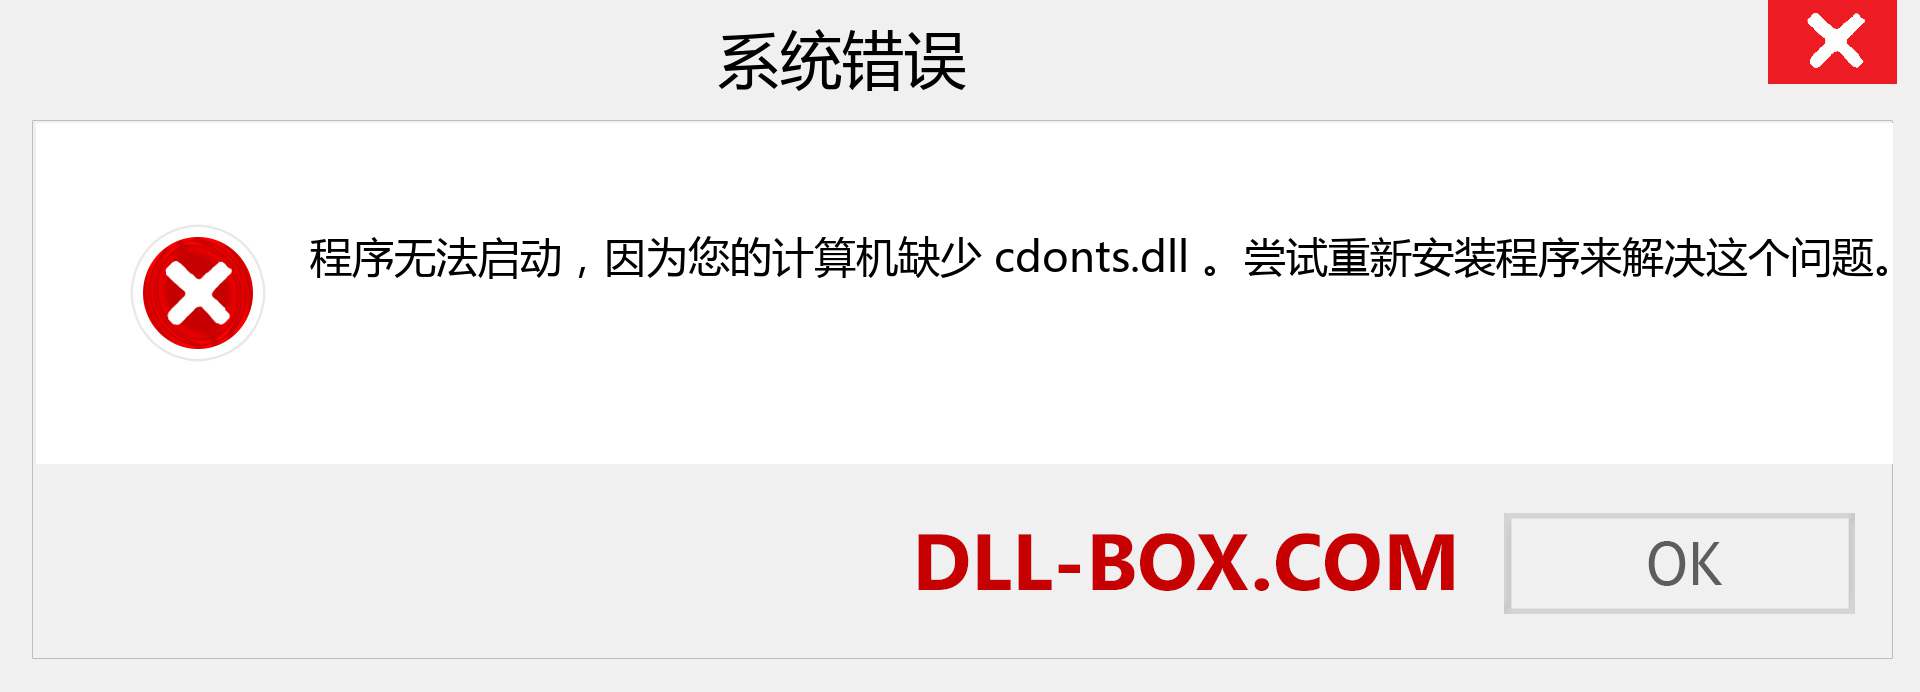 cdonts.dll 文件丢失？。 适用于 Windows 7、8、10 的下载 - 修复 Windows、照片、图像上的 cdonts dll 丢失错误